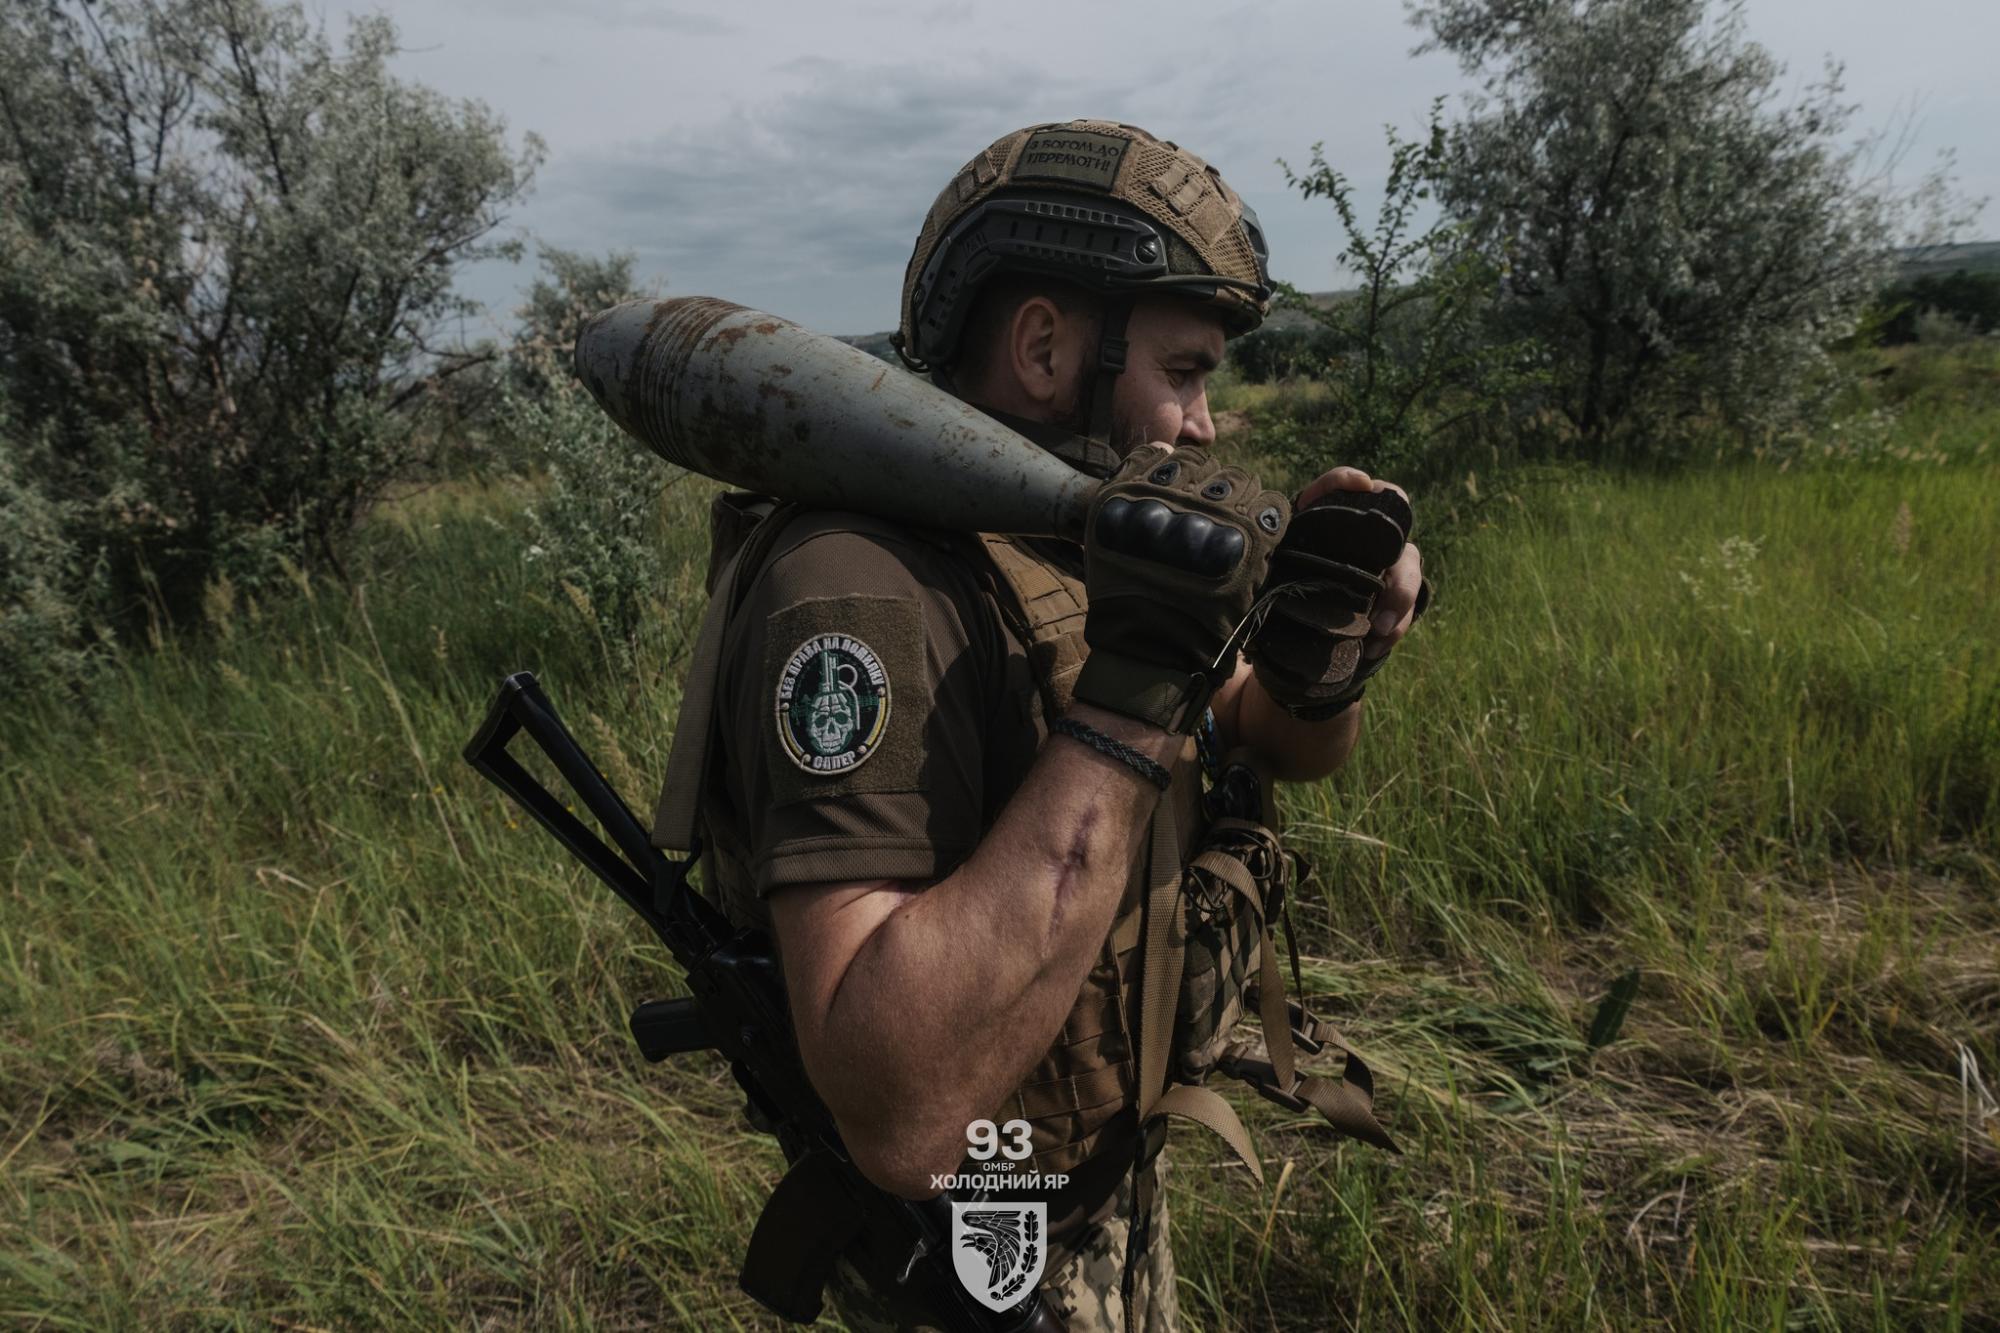 "Понадобятся сотни лет". 93 бригада показала, как разминируют Украину: фото